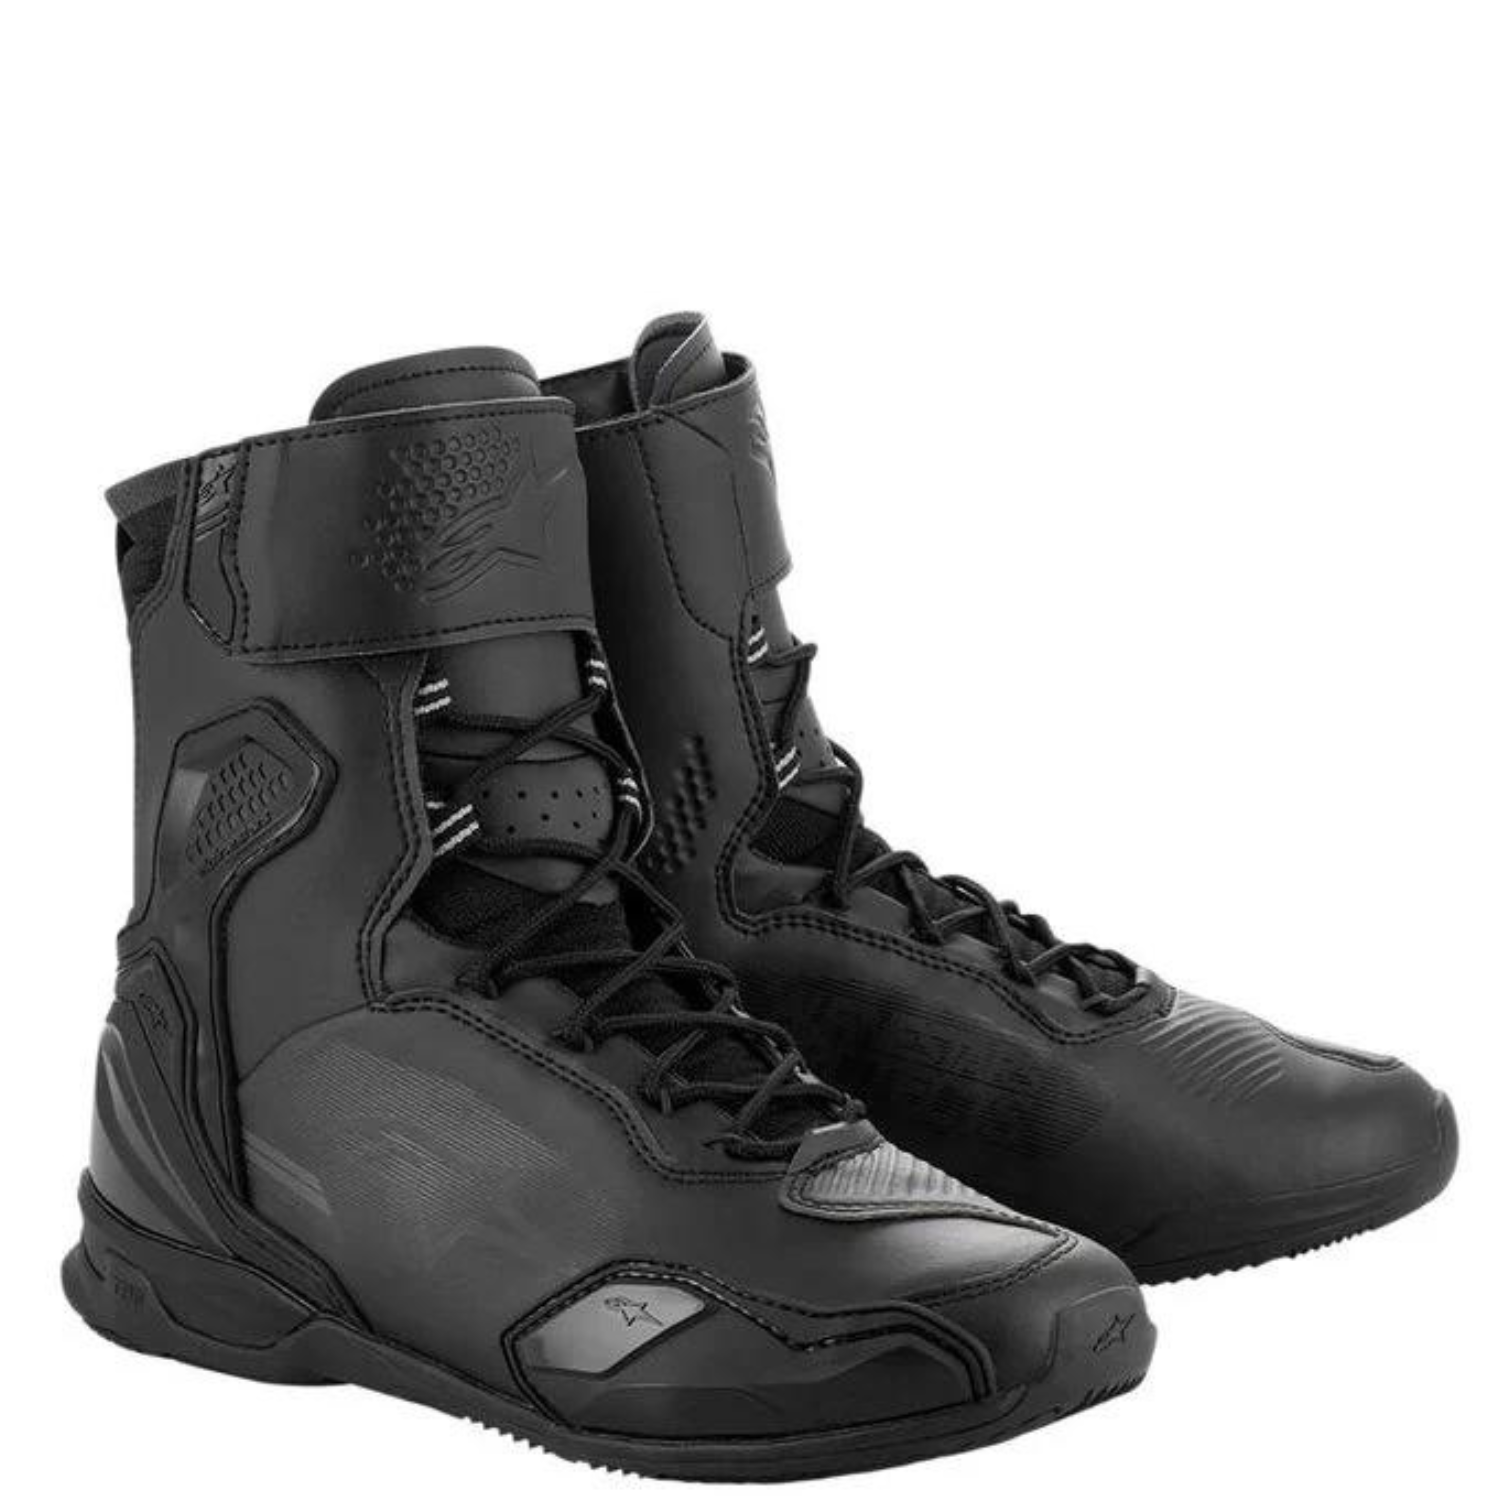 Image of Alpinestars Superfaster Shoes Black Size US 135 EN